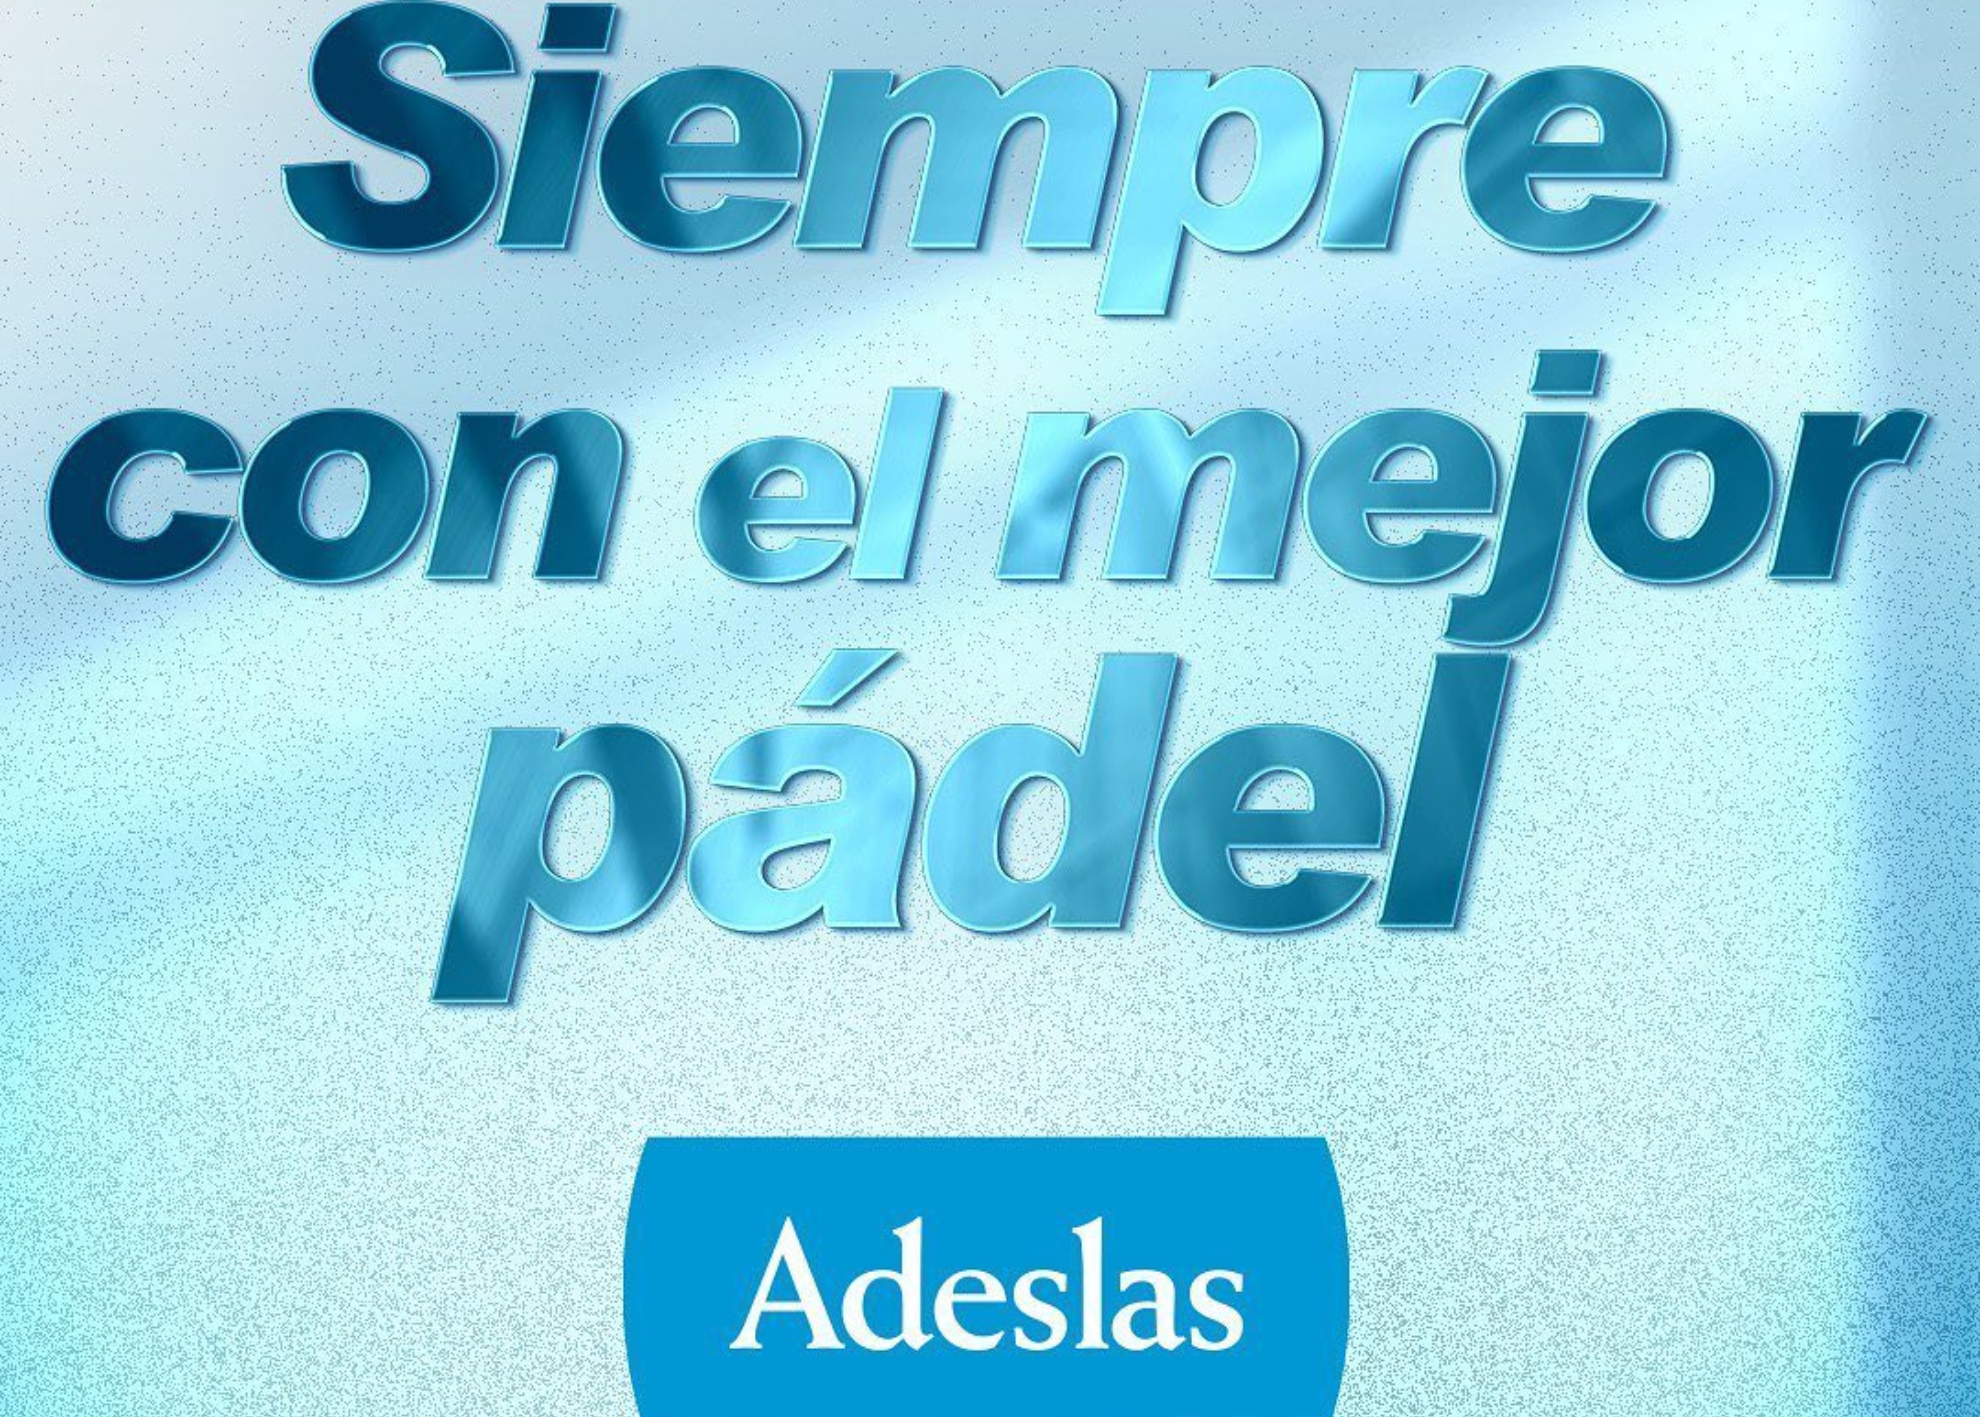 SegurCaixa Adeslas, patrocinadora principal de los torneos españoles del circuito Premier Padel: Sevilla P2, Málaga P1, Madrid P1 y Tour Finals Barcelona